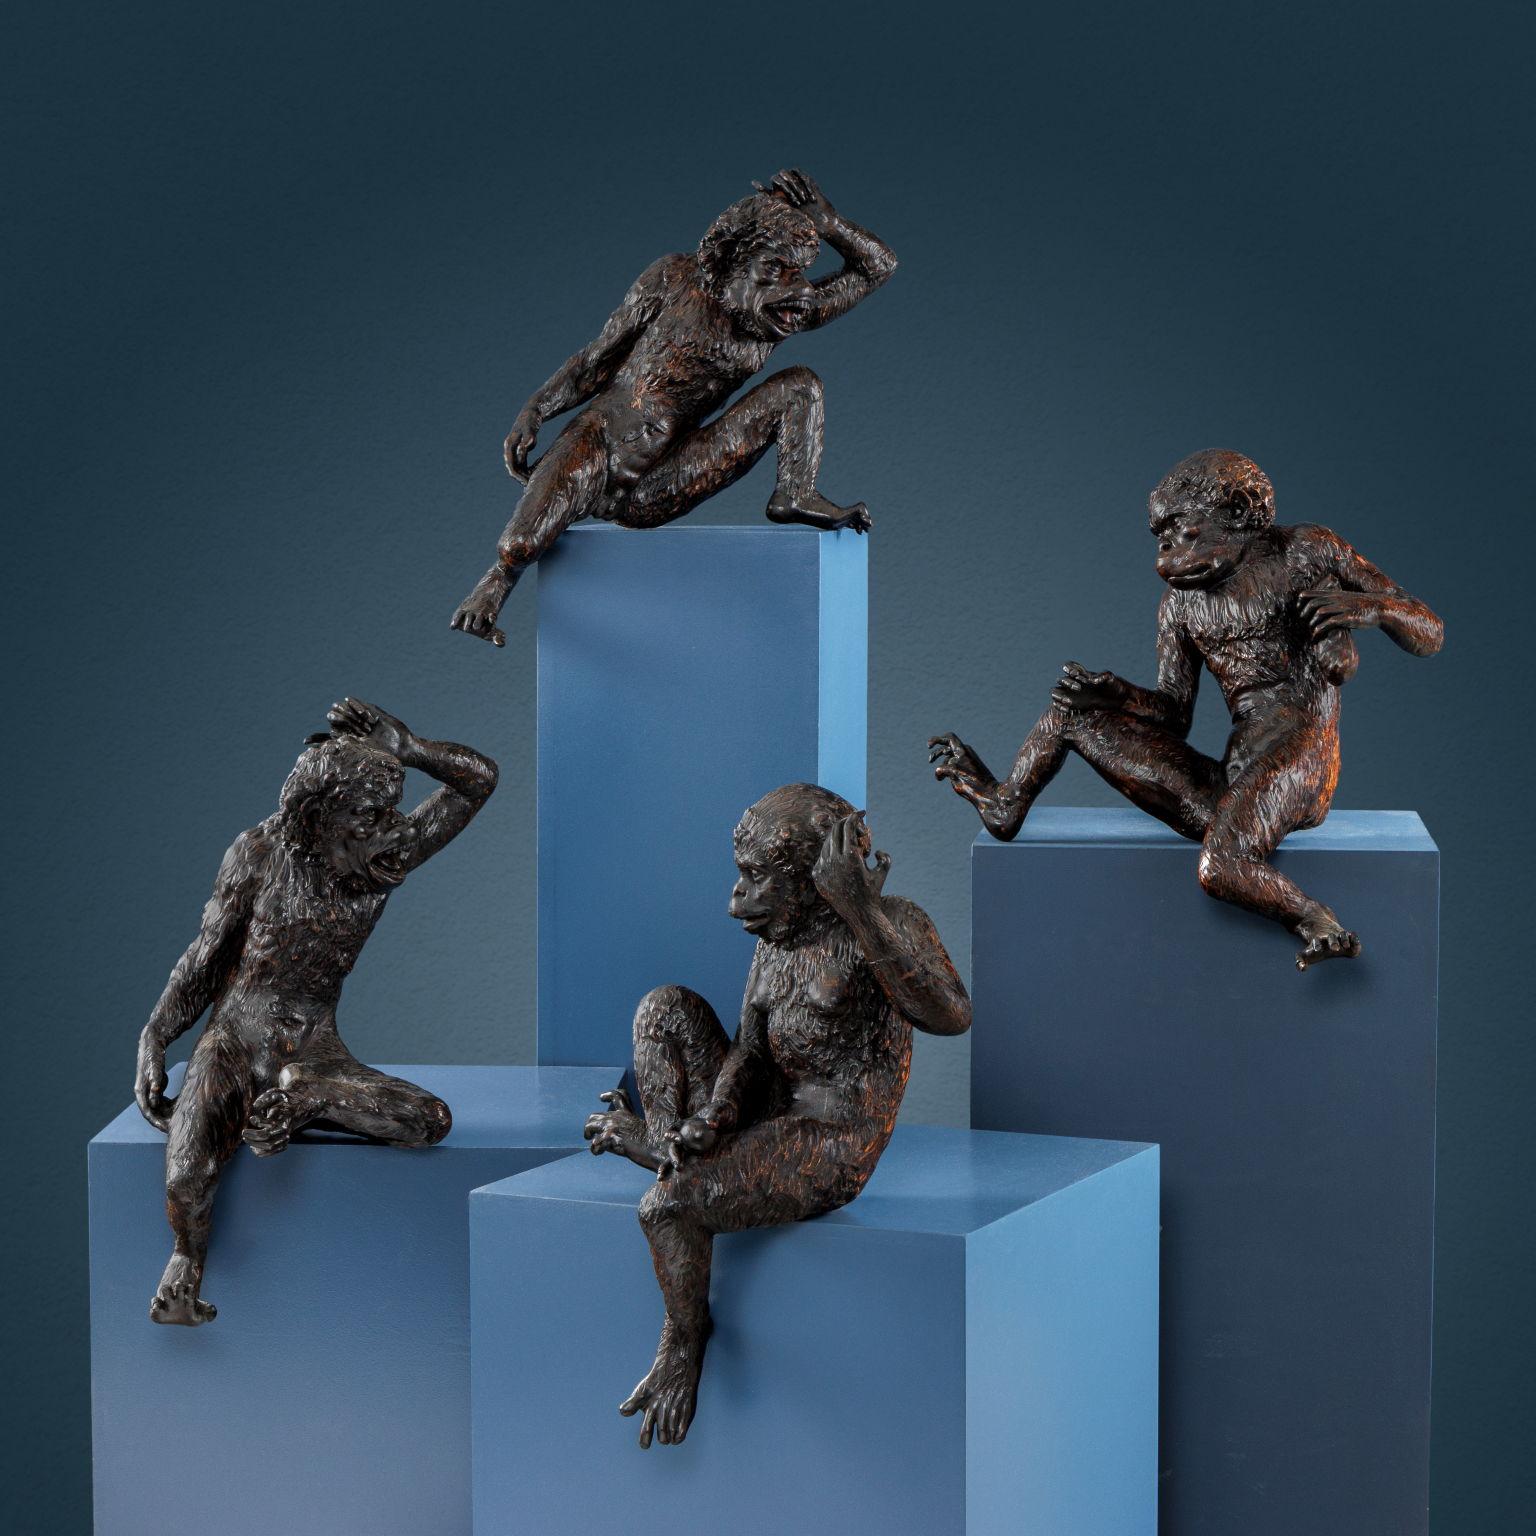 Gruppo di quattro scimmie in legno di tiglio finemente intagliato e patinato scuro. I primati, rappresentati con dovizia di particolari anatomici, assumono pose singolari che le rendono l’una diversa dall’altra: una scimmia regge in una mano un